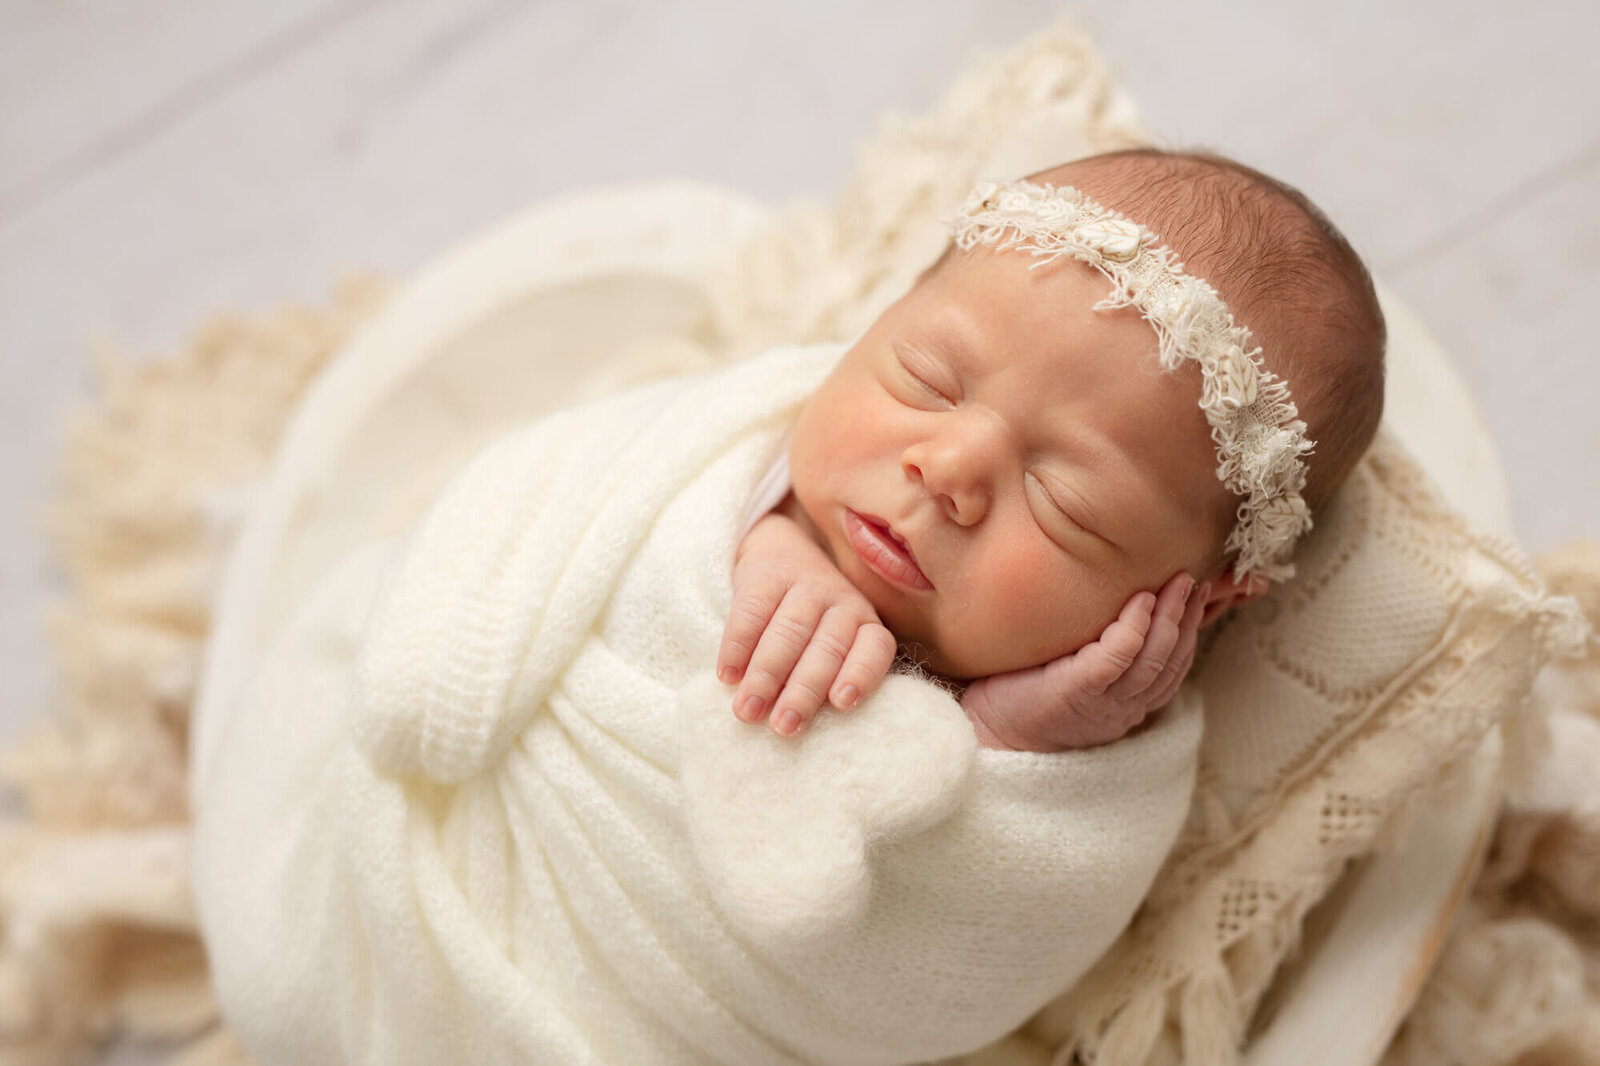 Sleeping newborn girl in white wooden white heart shaped bowl  holding felted white heart